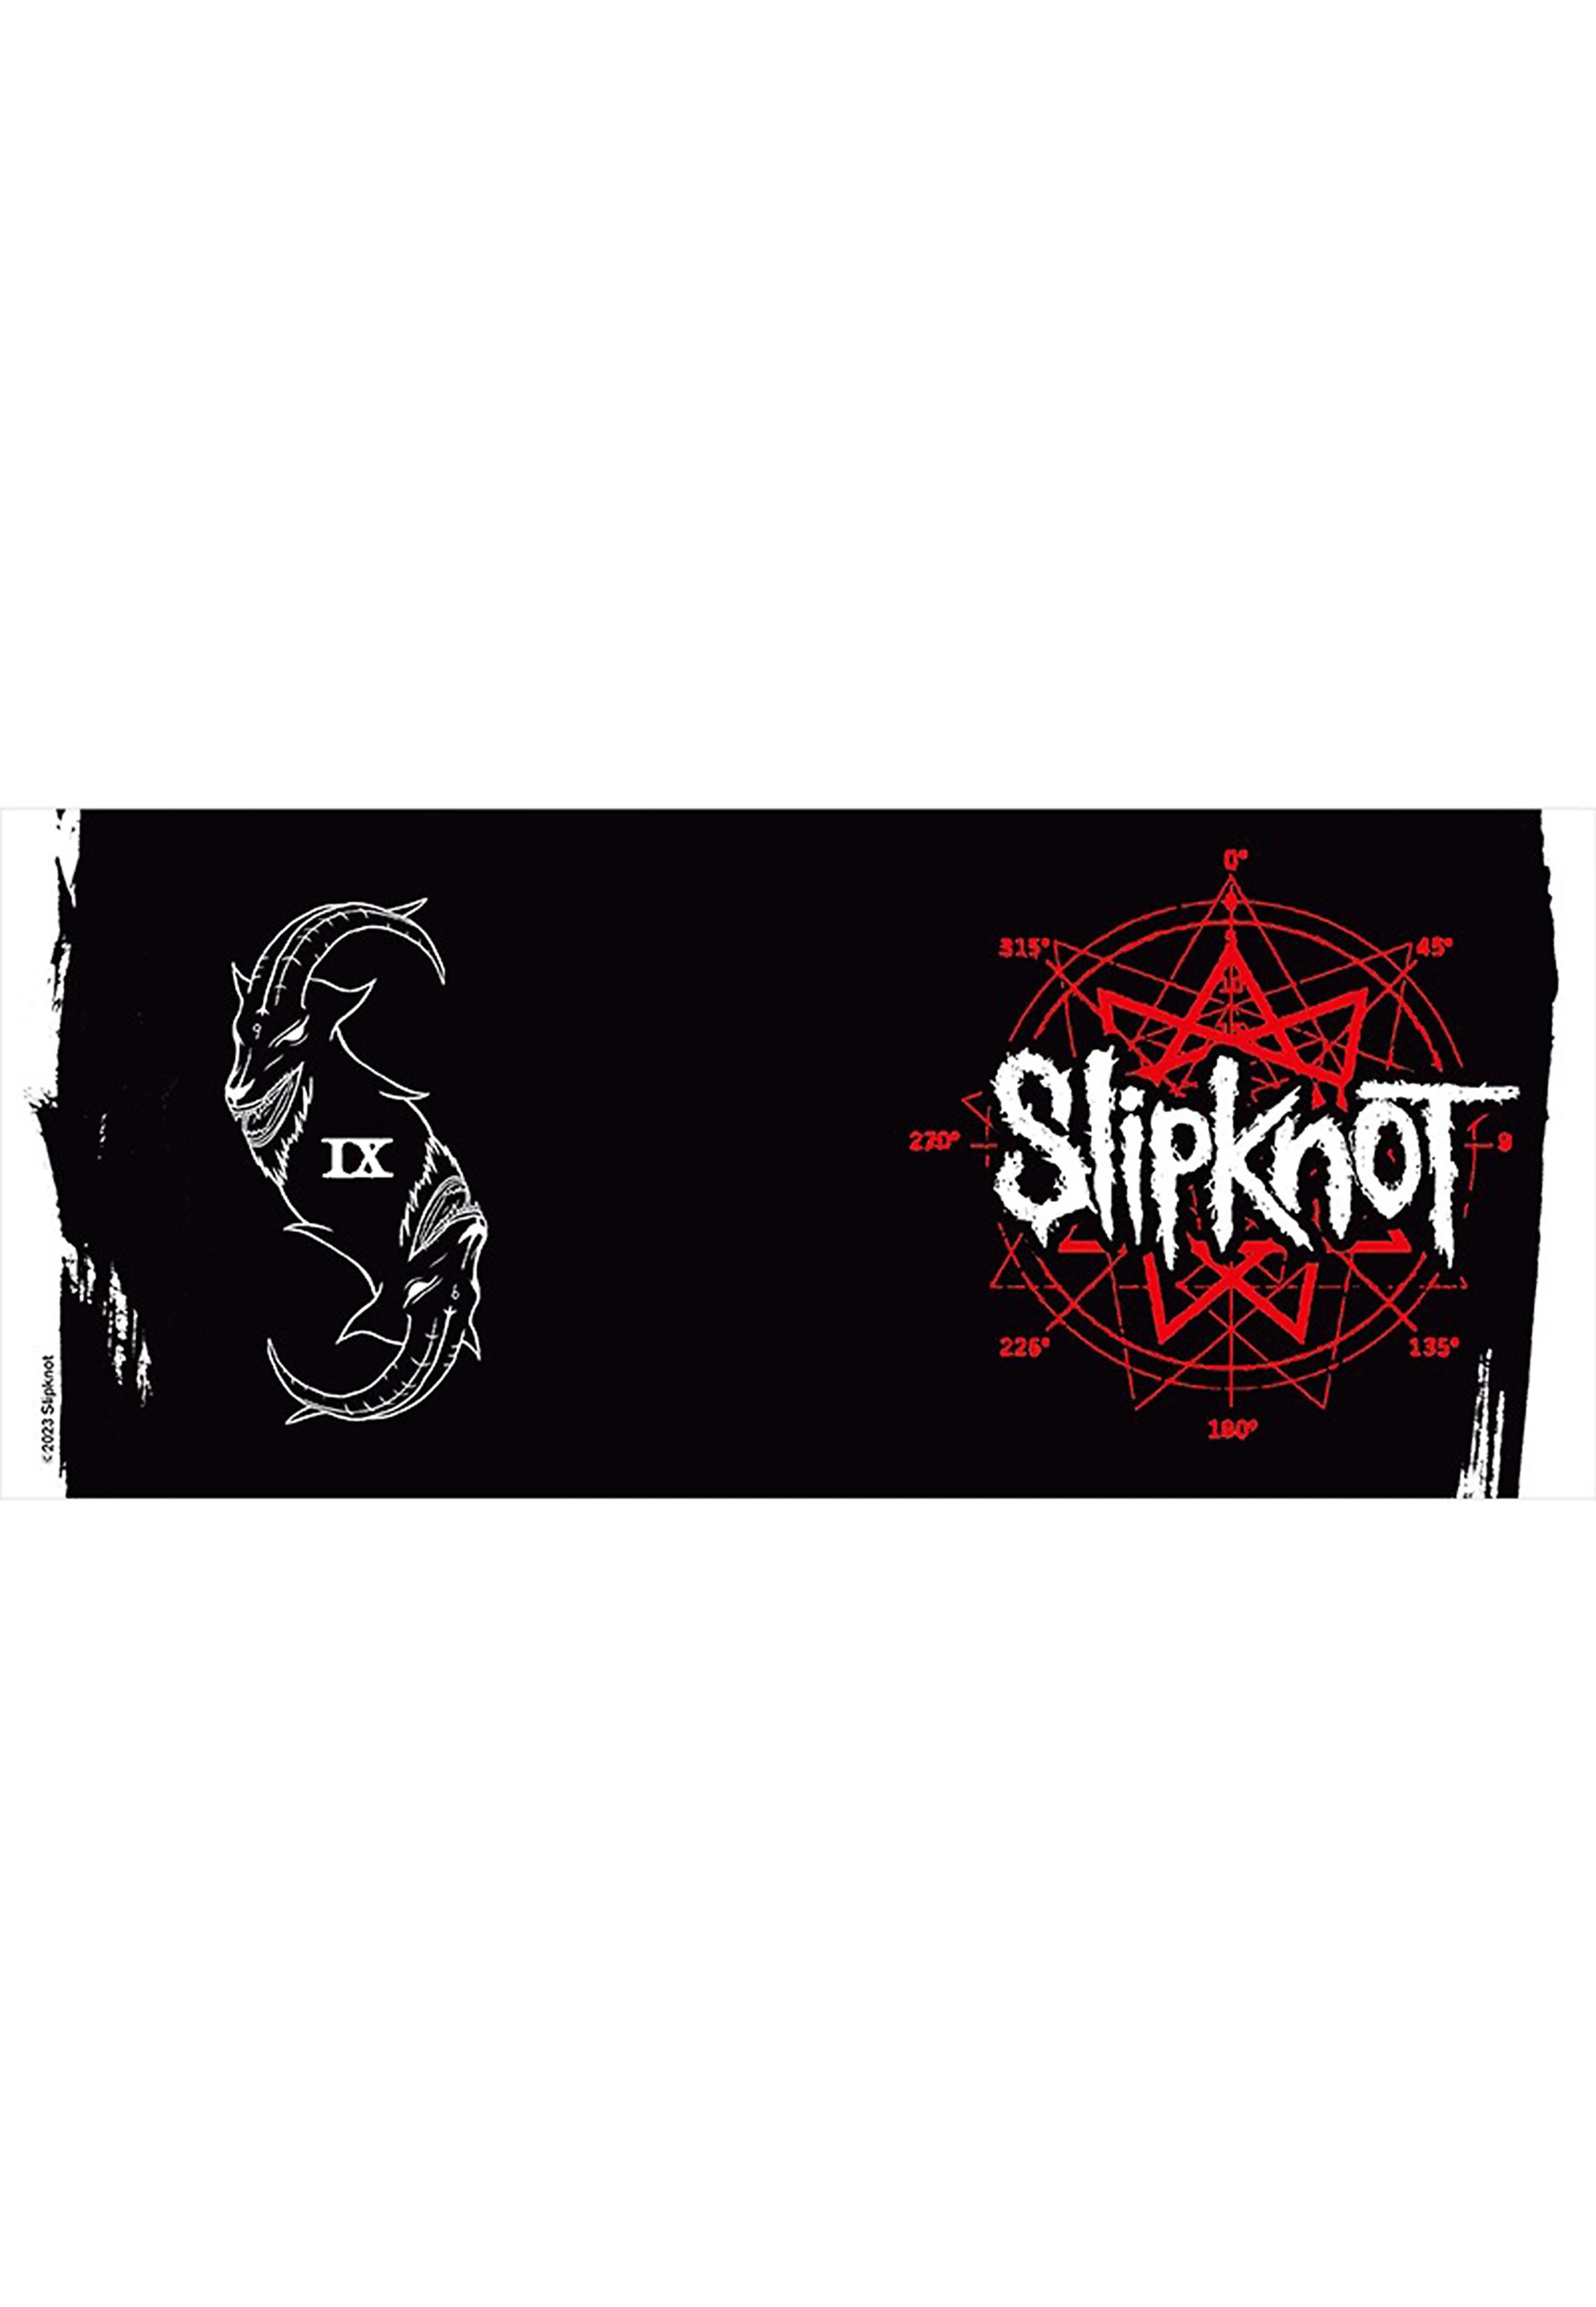 Slipknot - Goat - Mug